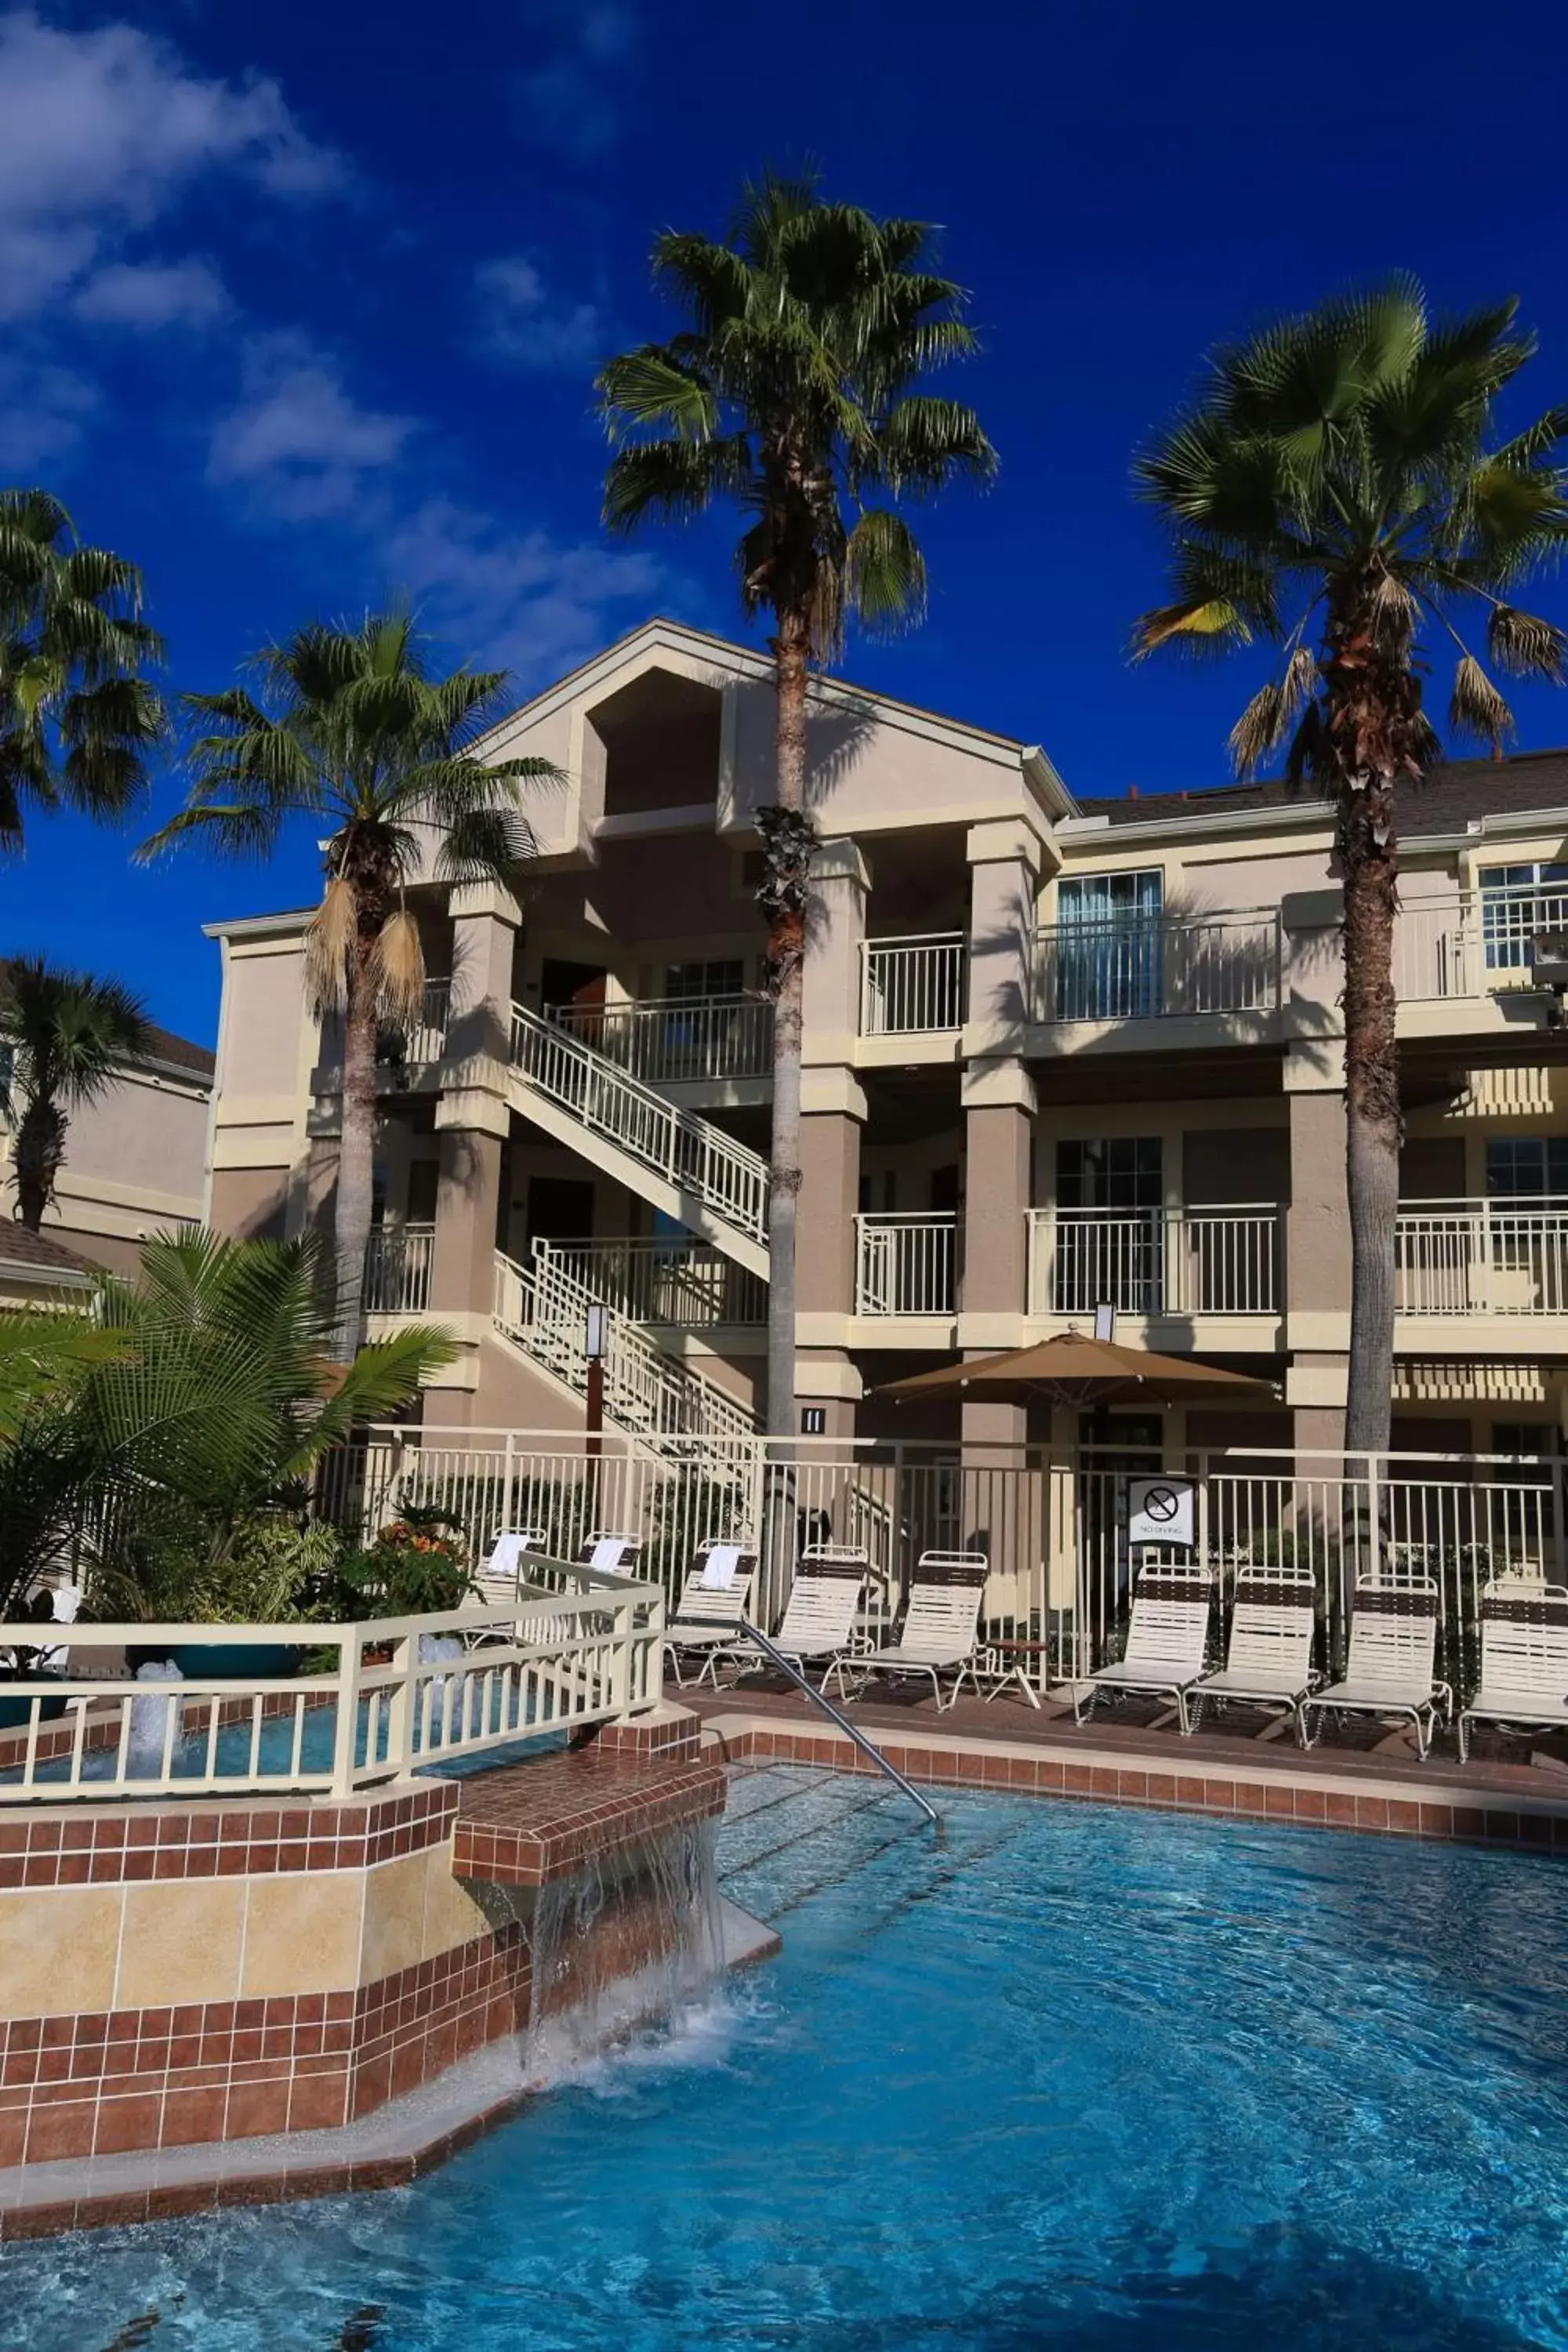 Pool view, Property Building in Sonesta ES Suites Orlando - Lake Buena Vista